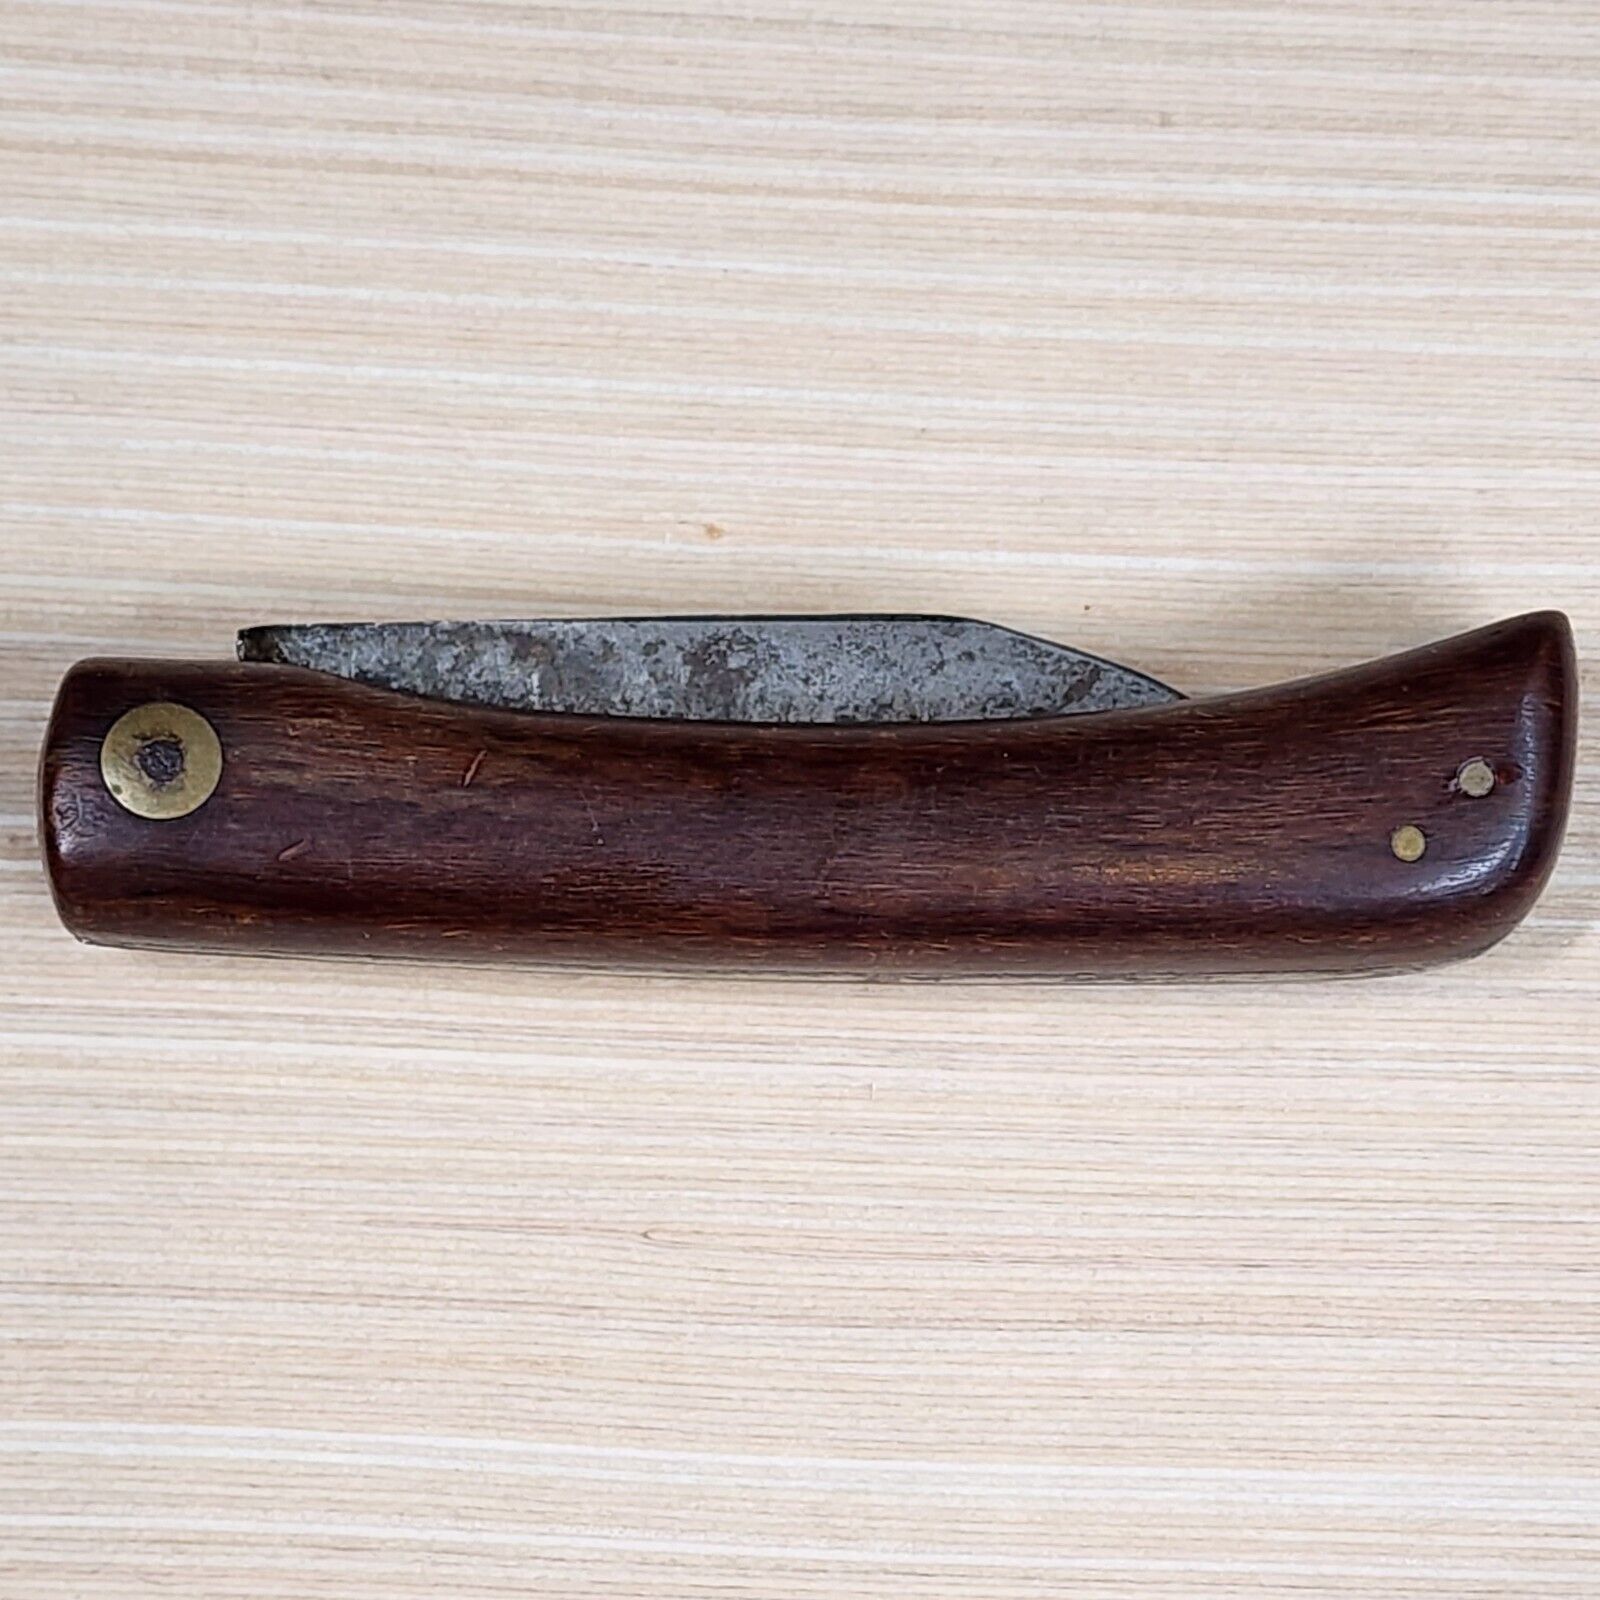 FRIEDR.HERDER Abr..Sohn Solingen Germany 1 Blade Antique Vintage Pocket Knife